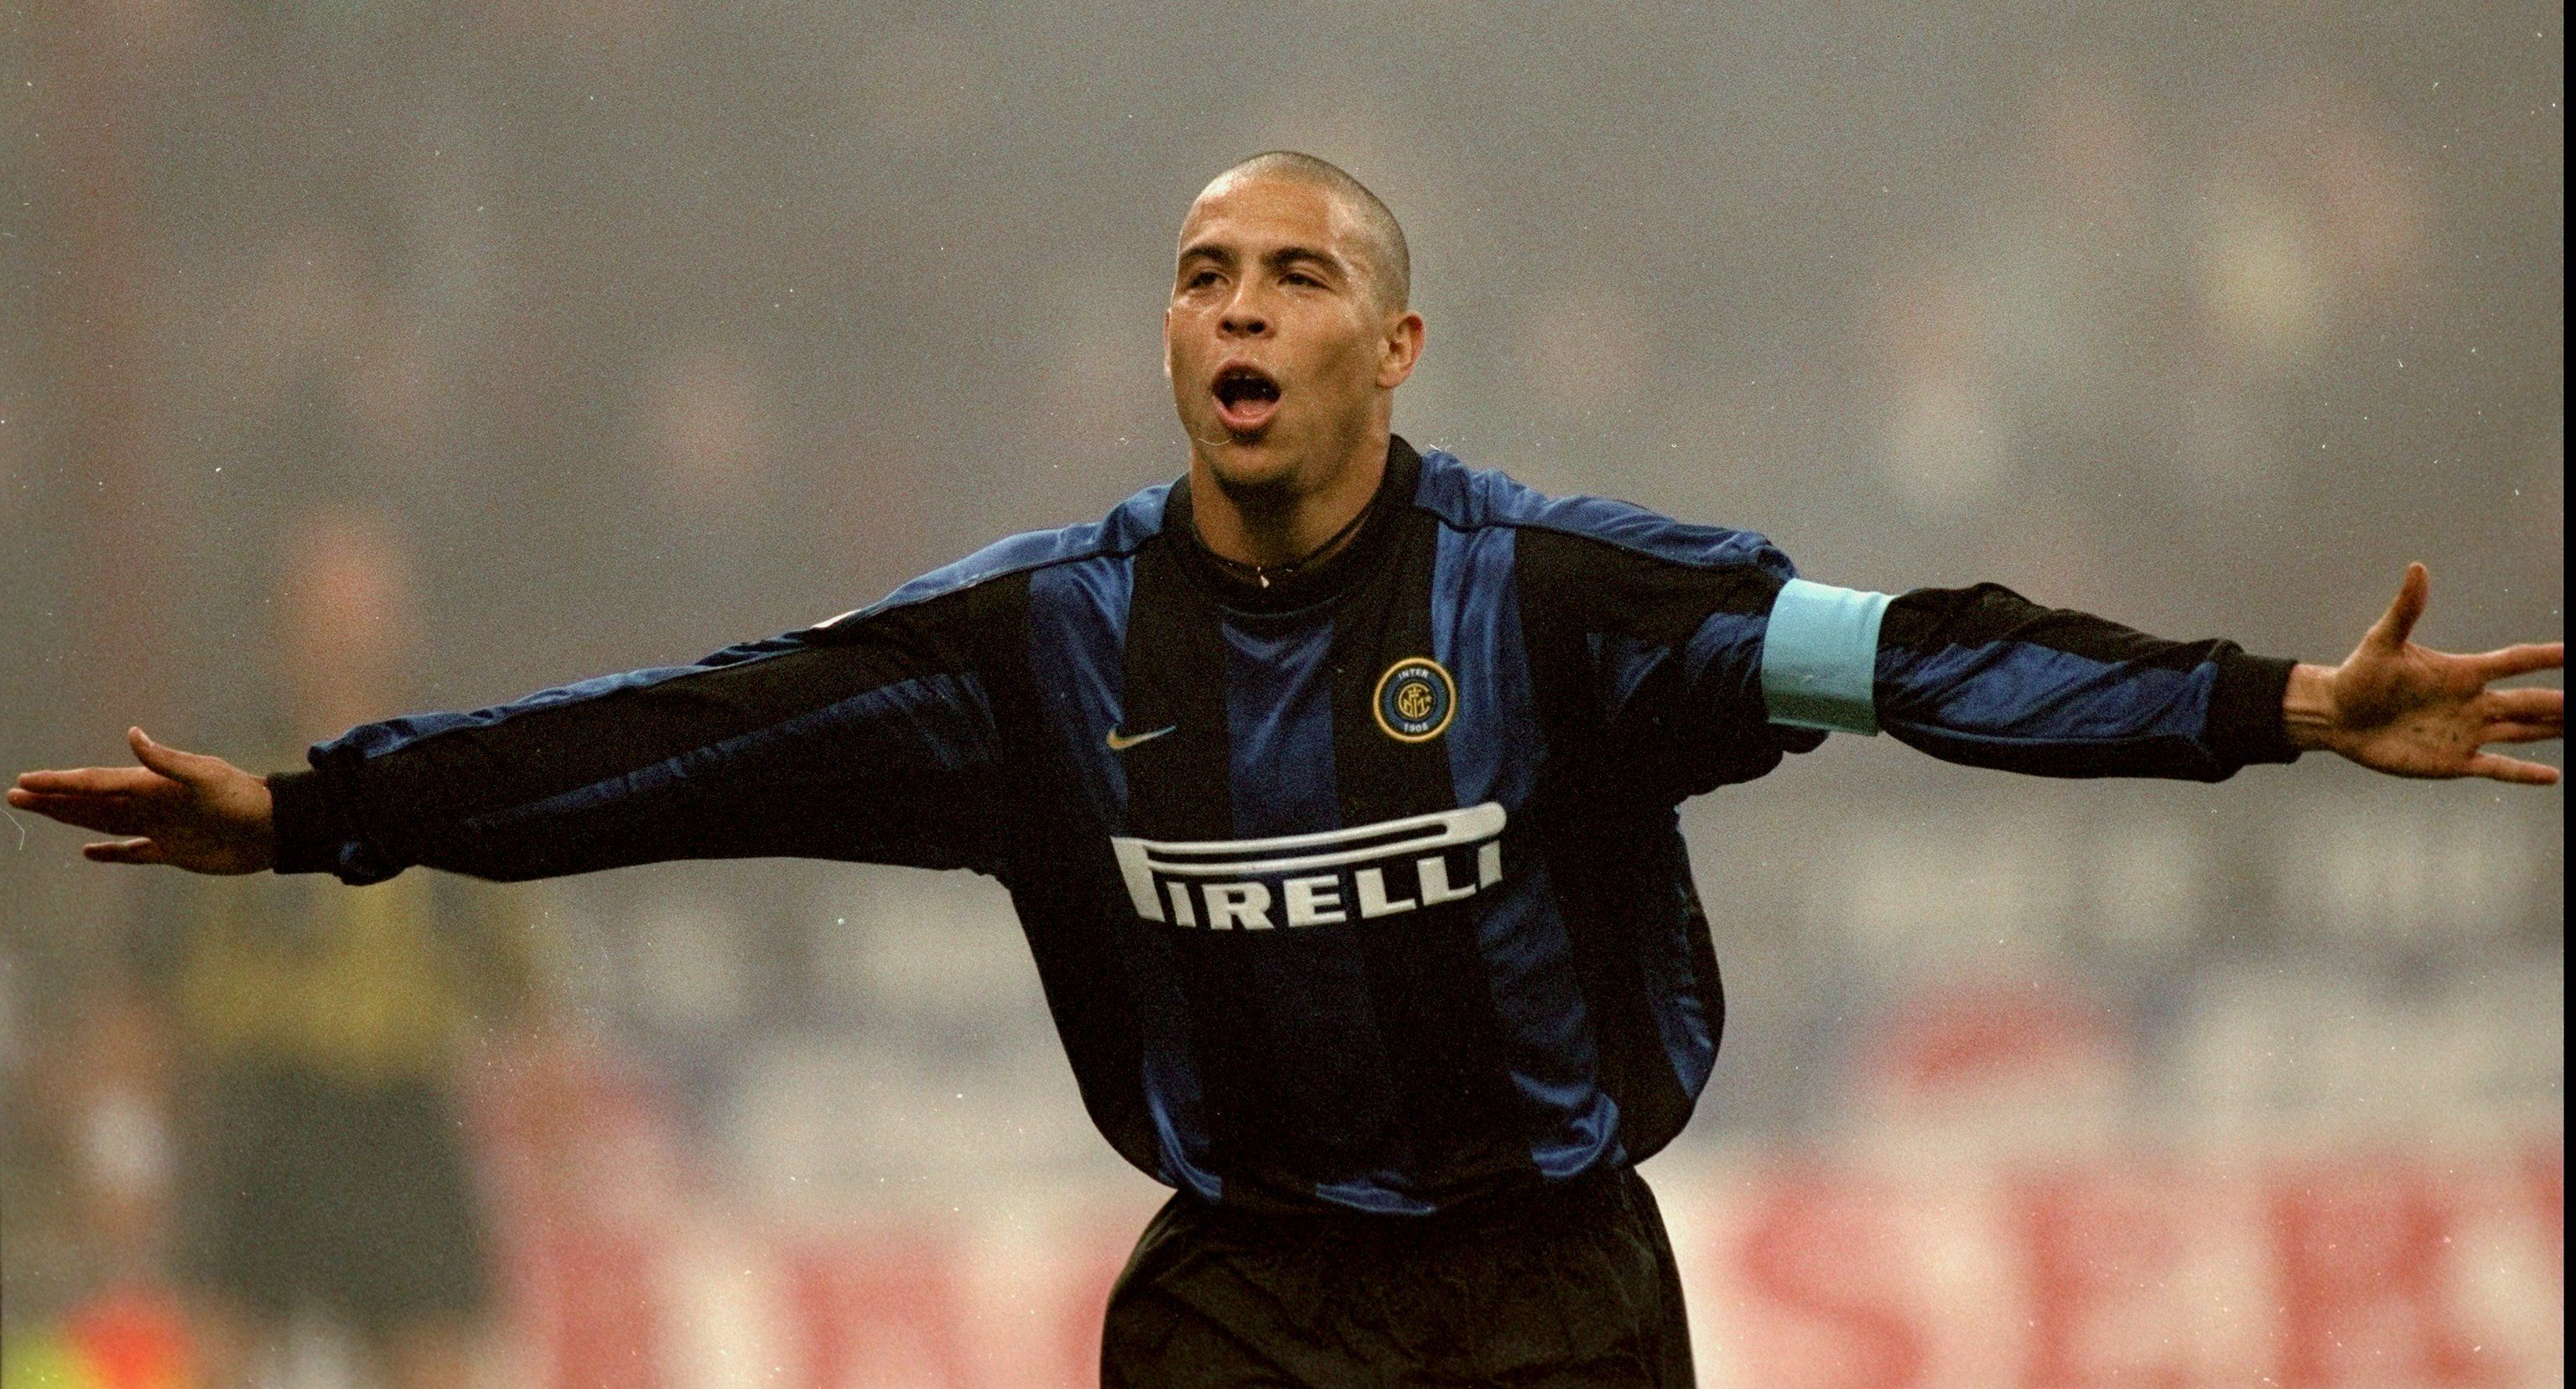 Ronaldo was sensational at Inter Milan